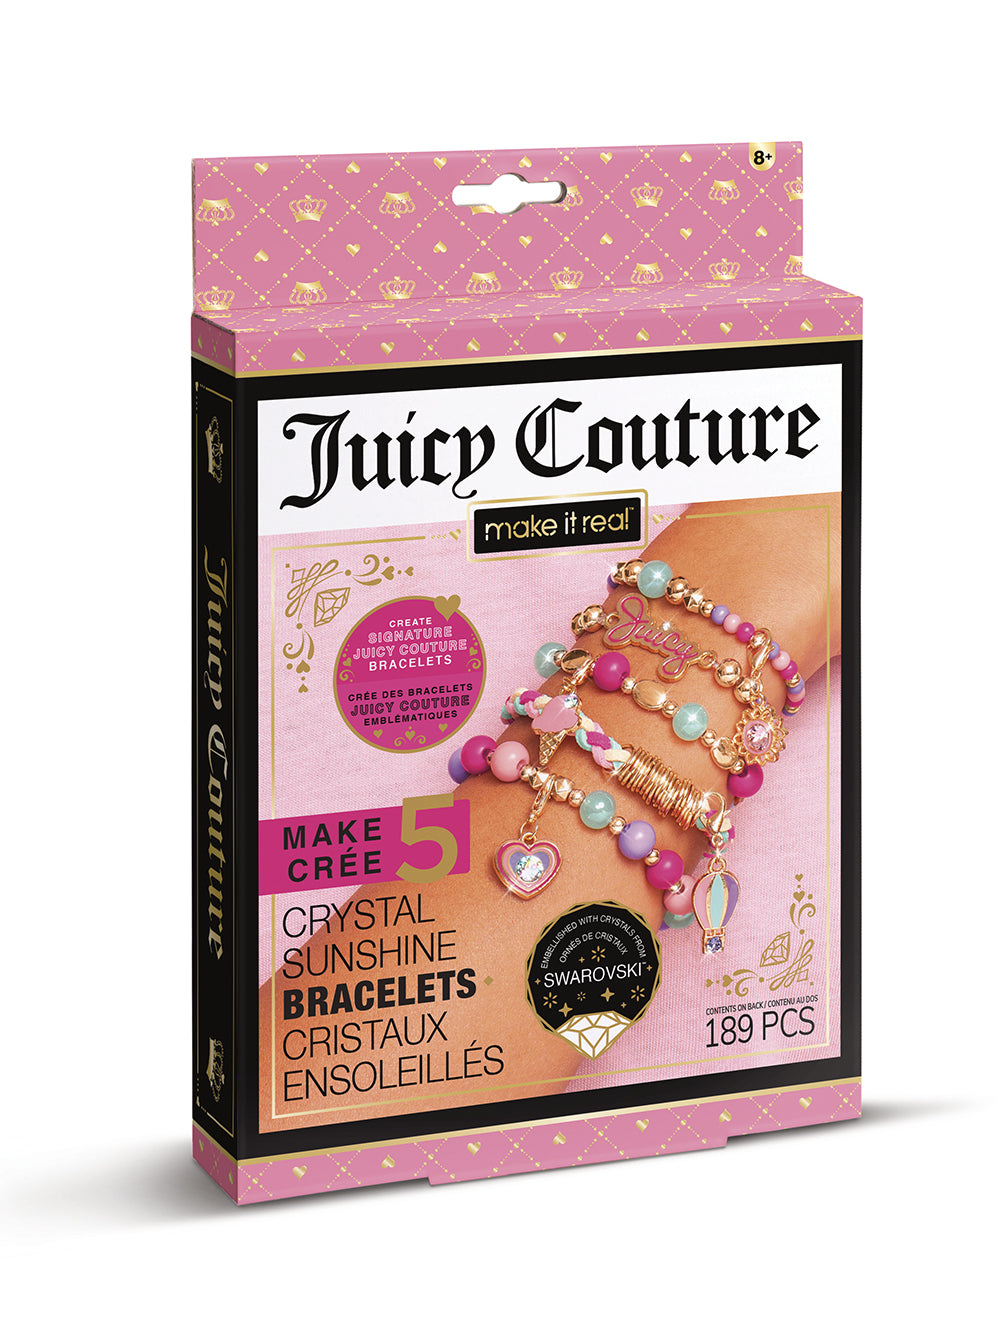 Make it real - Juicy Couture - Bracelets cristaux ensoleillés (189pcs)